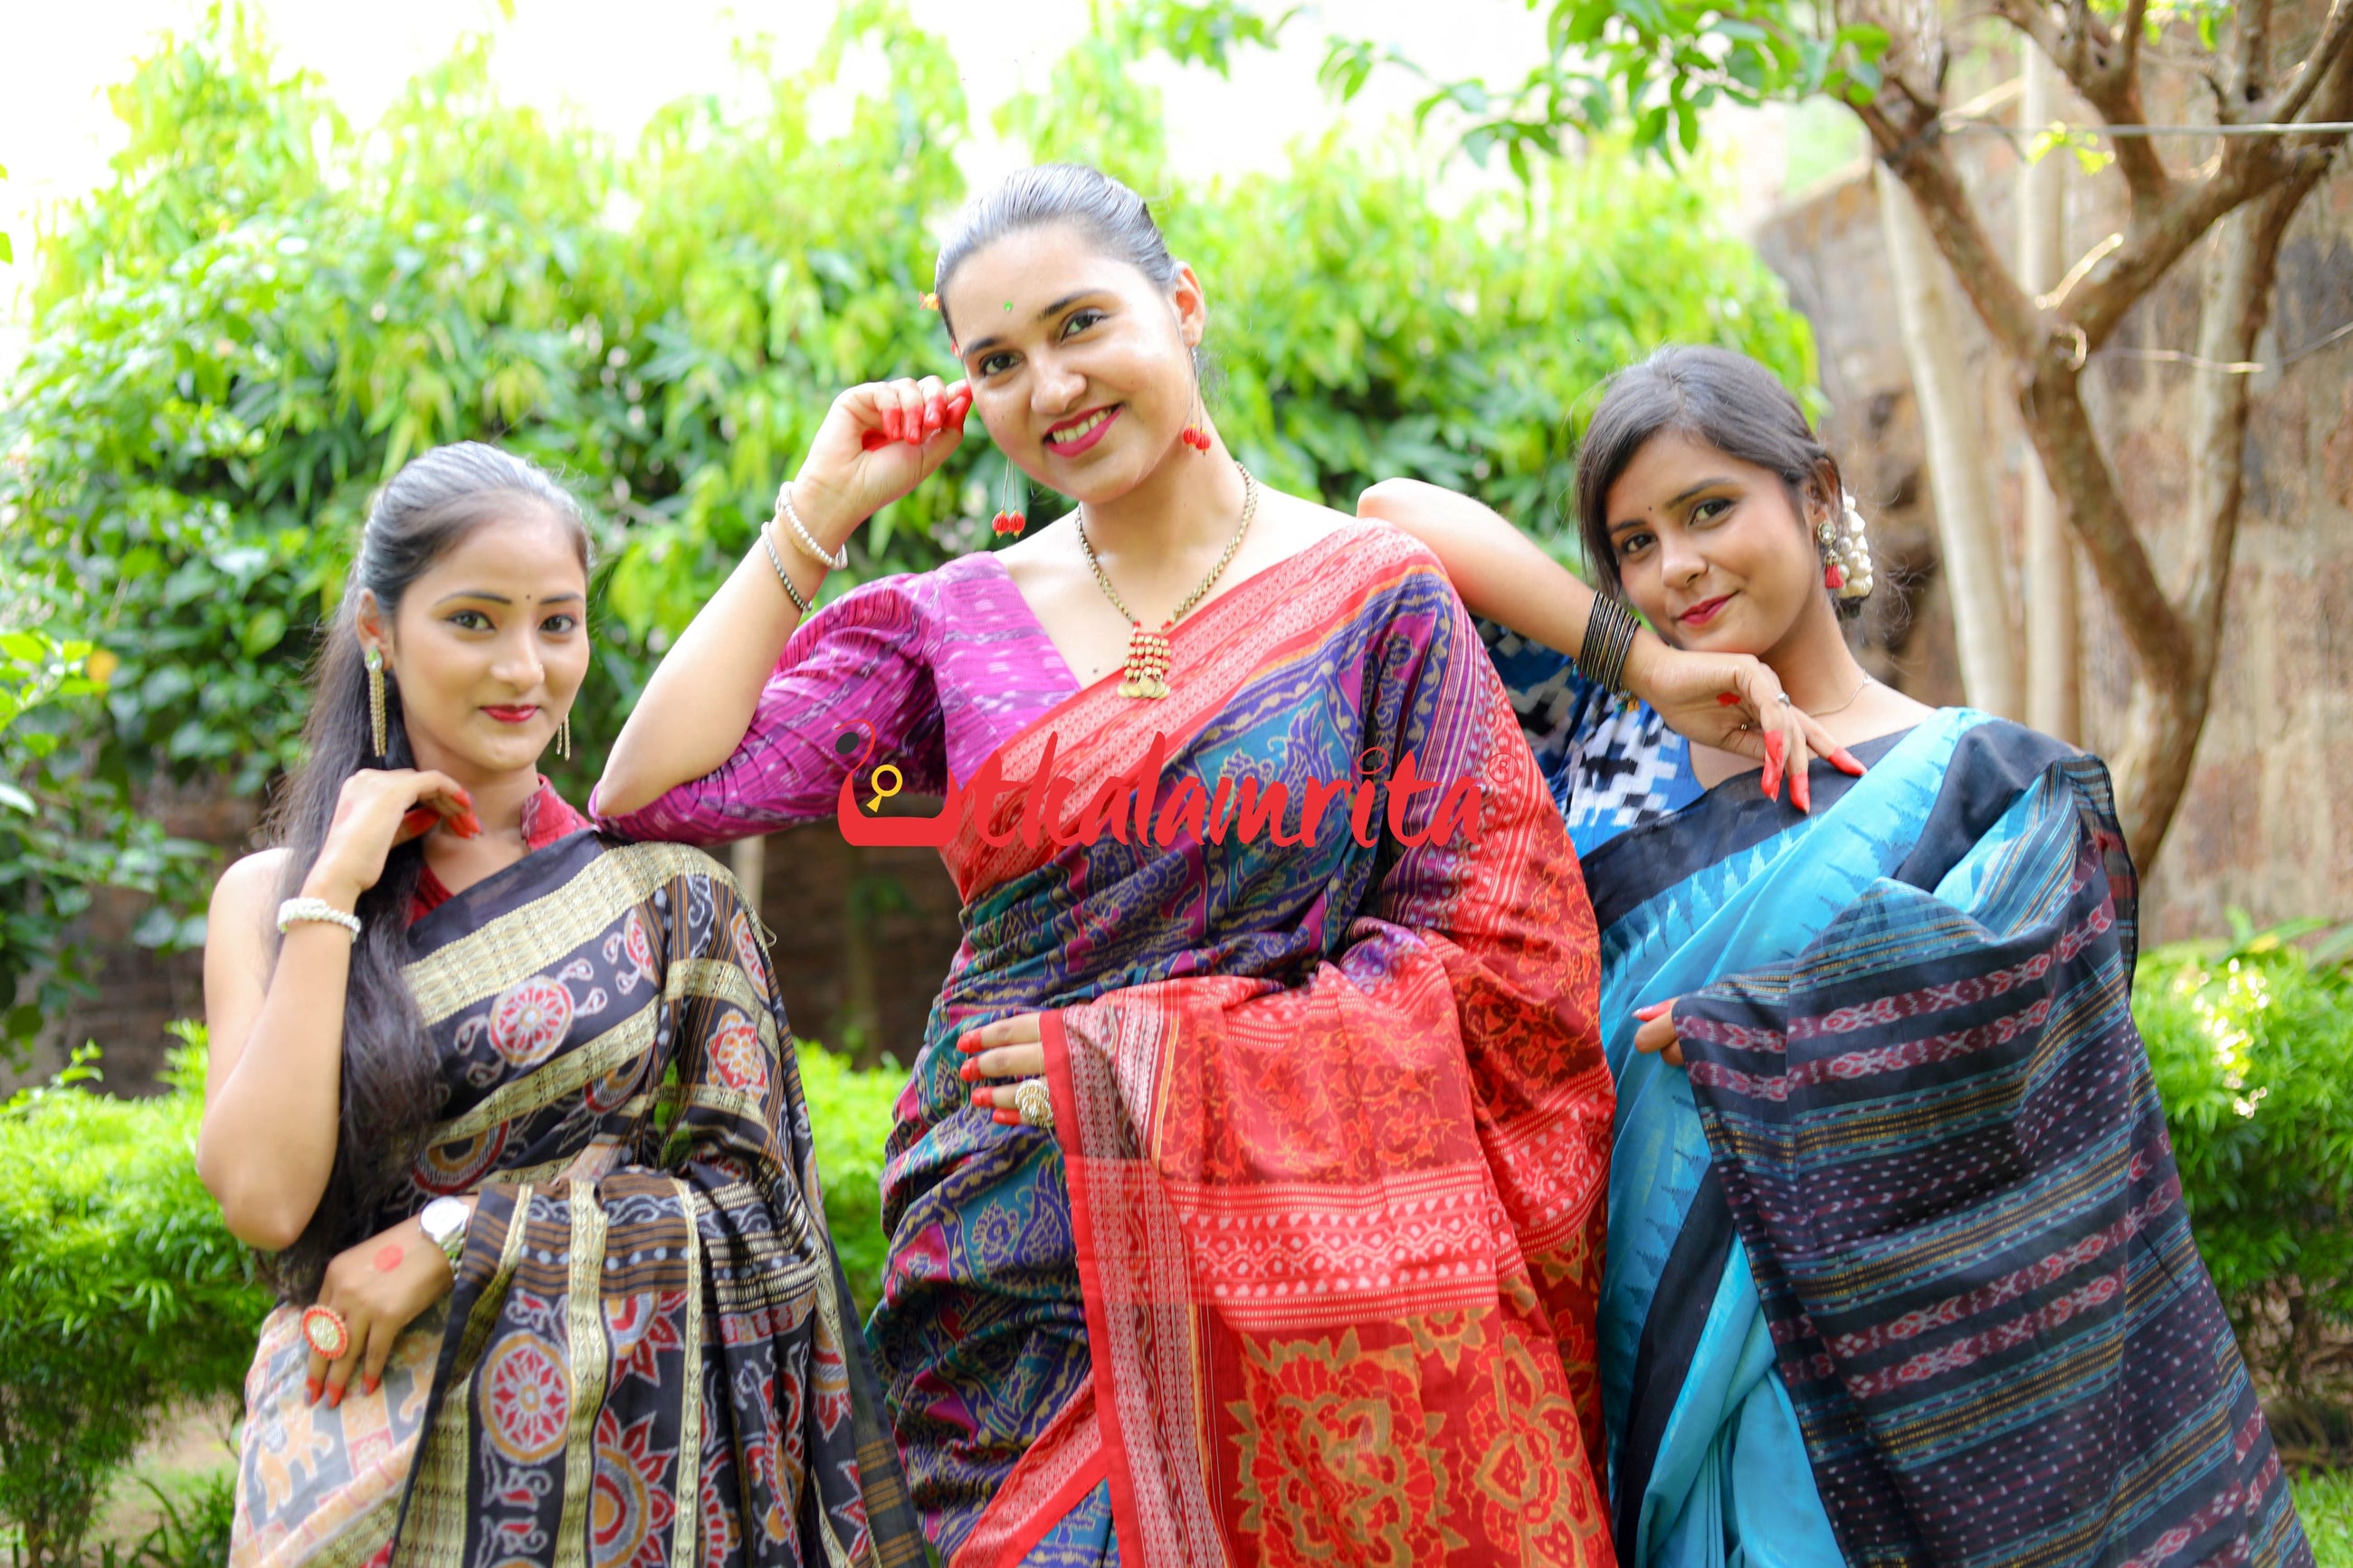 Celebrate Sabitri n Raja wearing best of Odisha weaves!